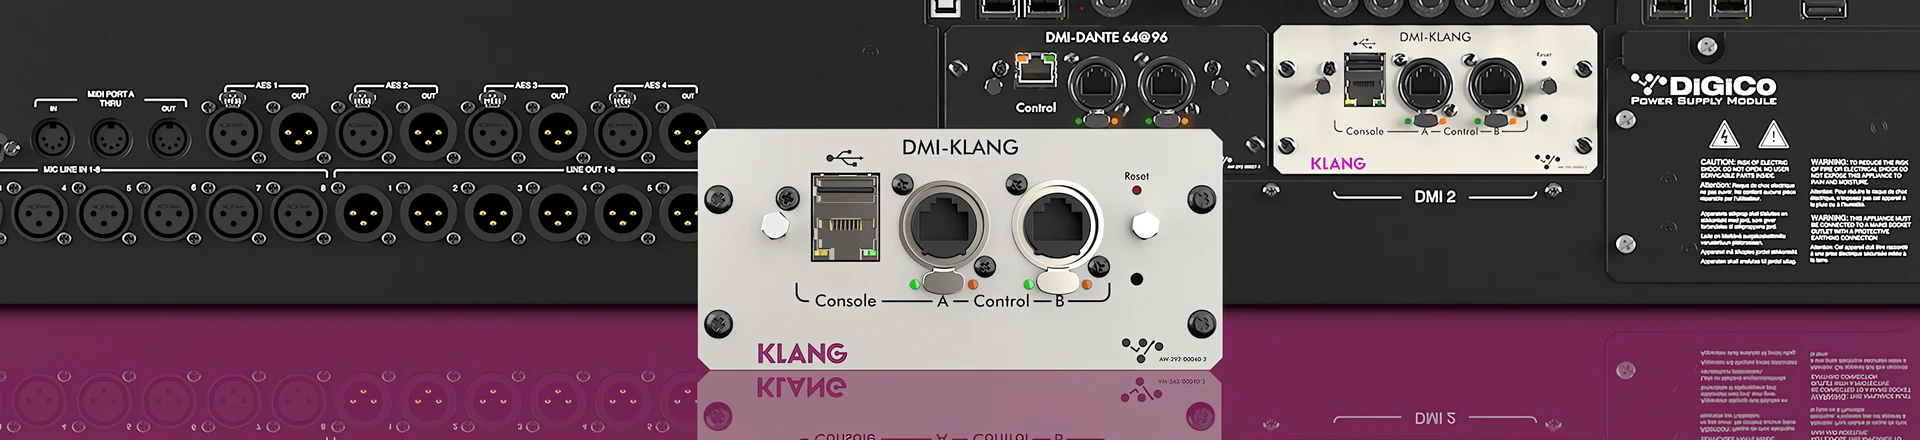 NAMM'20: Karta rozszerzeń DMI-KLANG dla konsolet DiGiCo